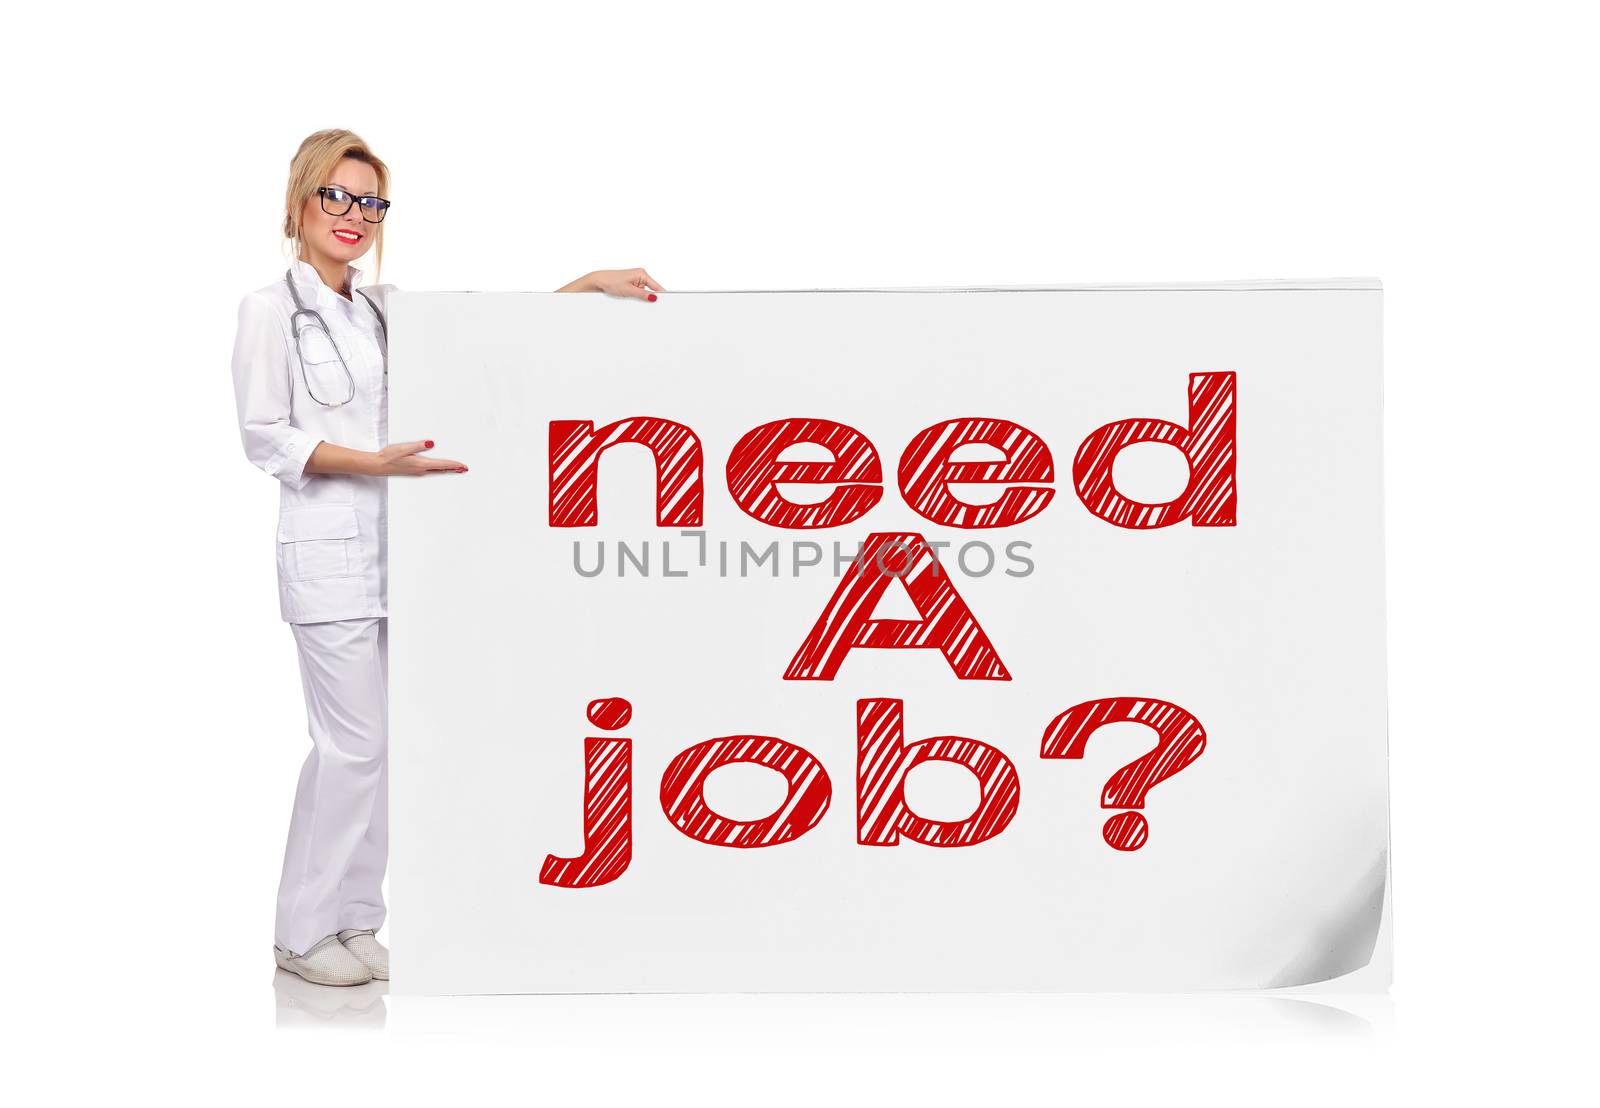 need a job by vetkit